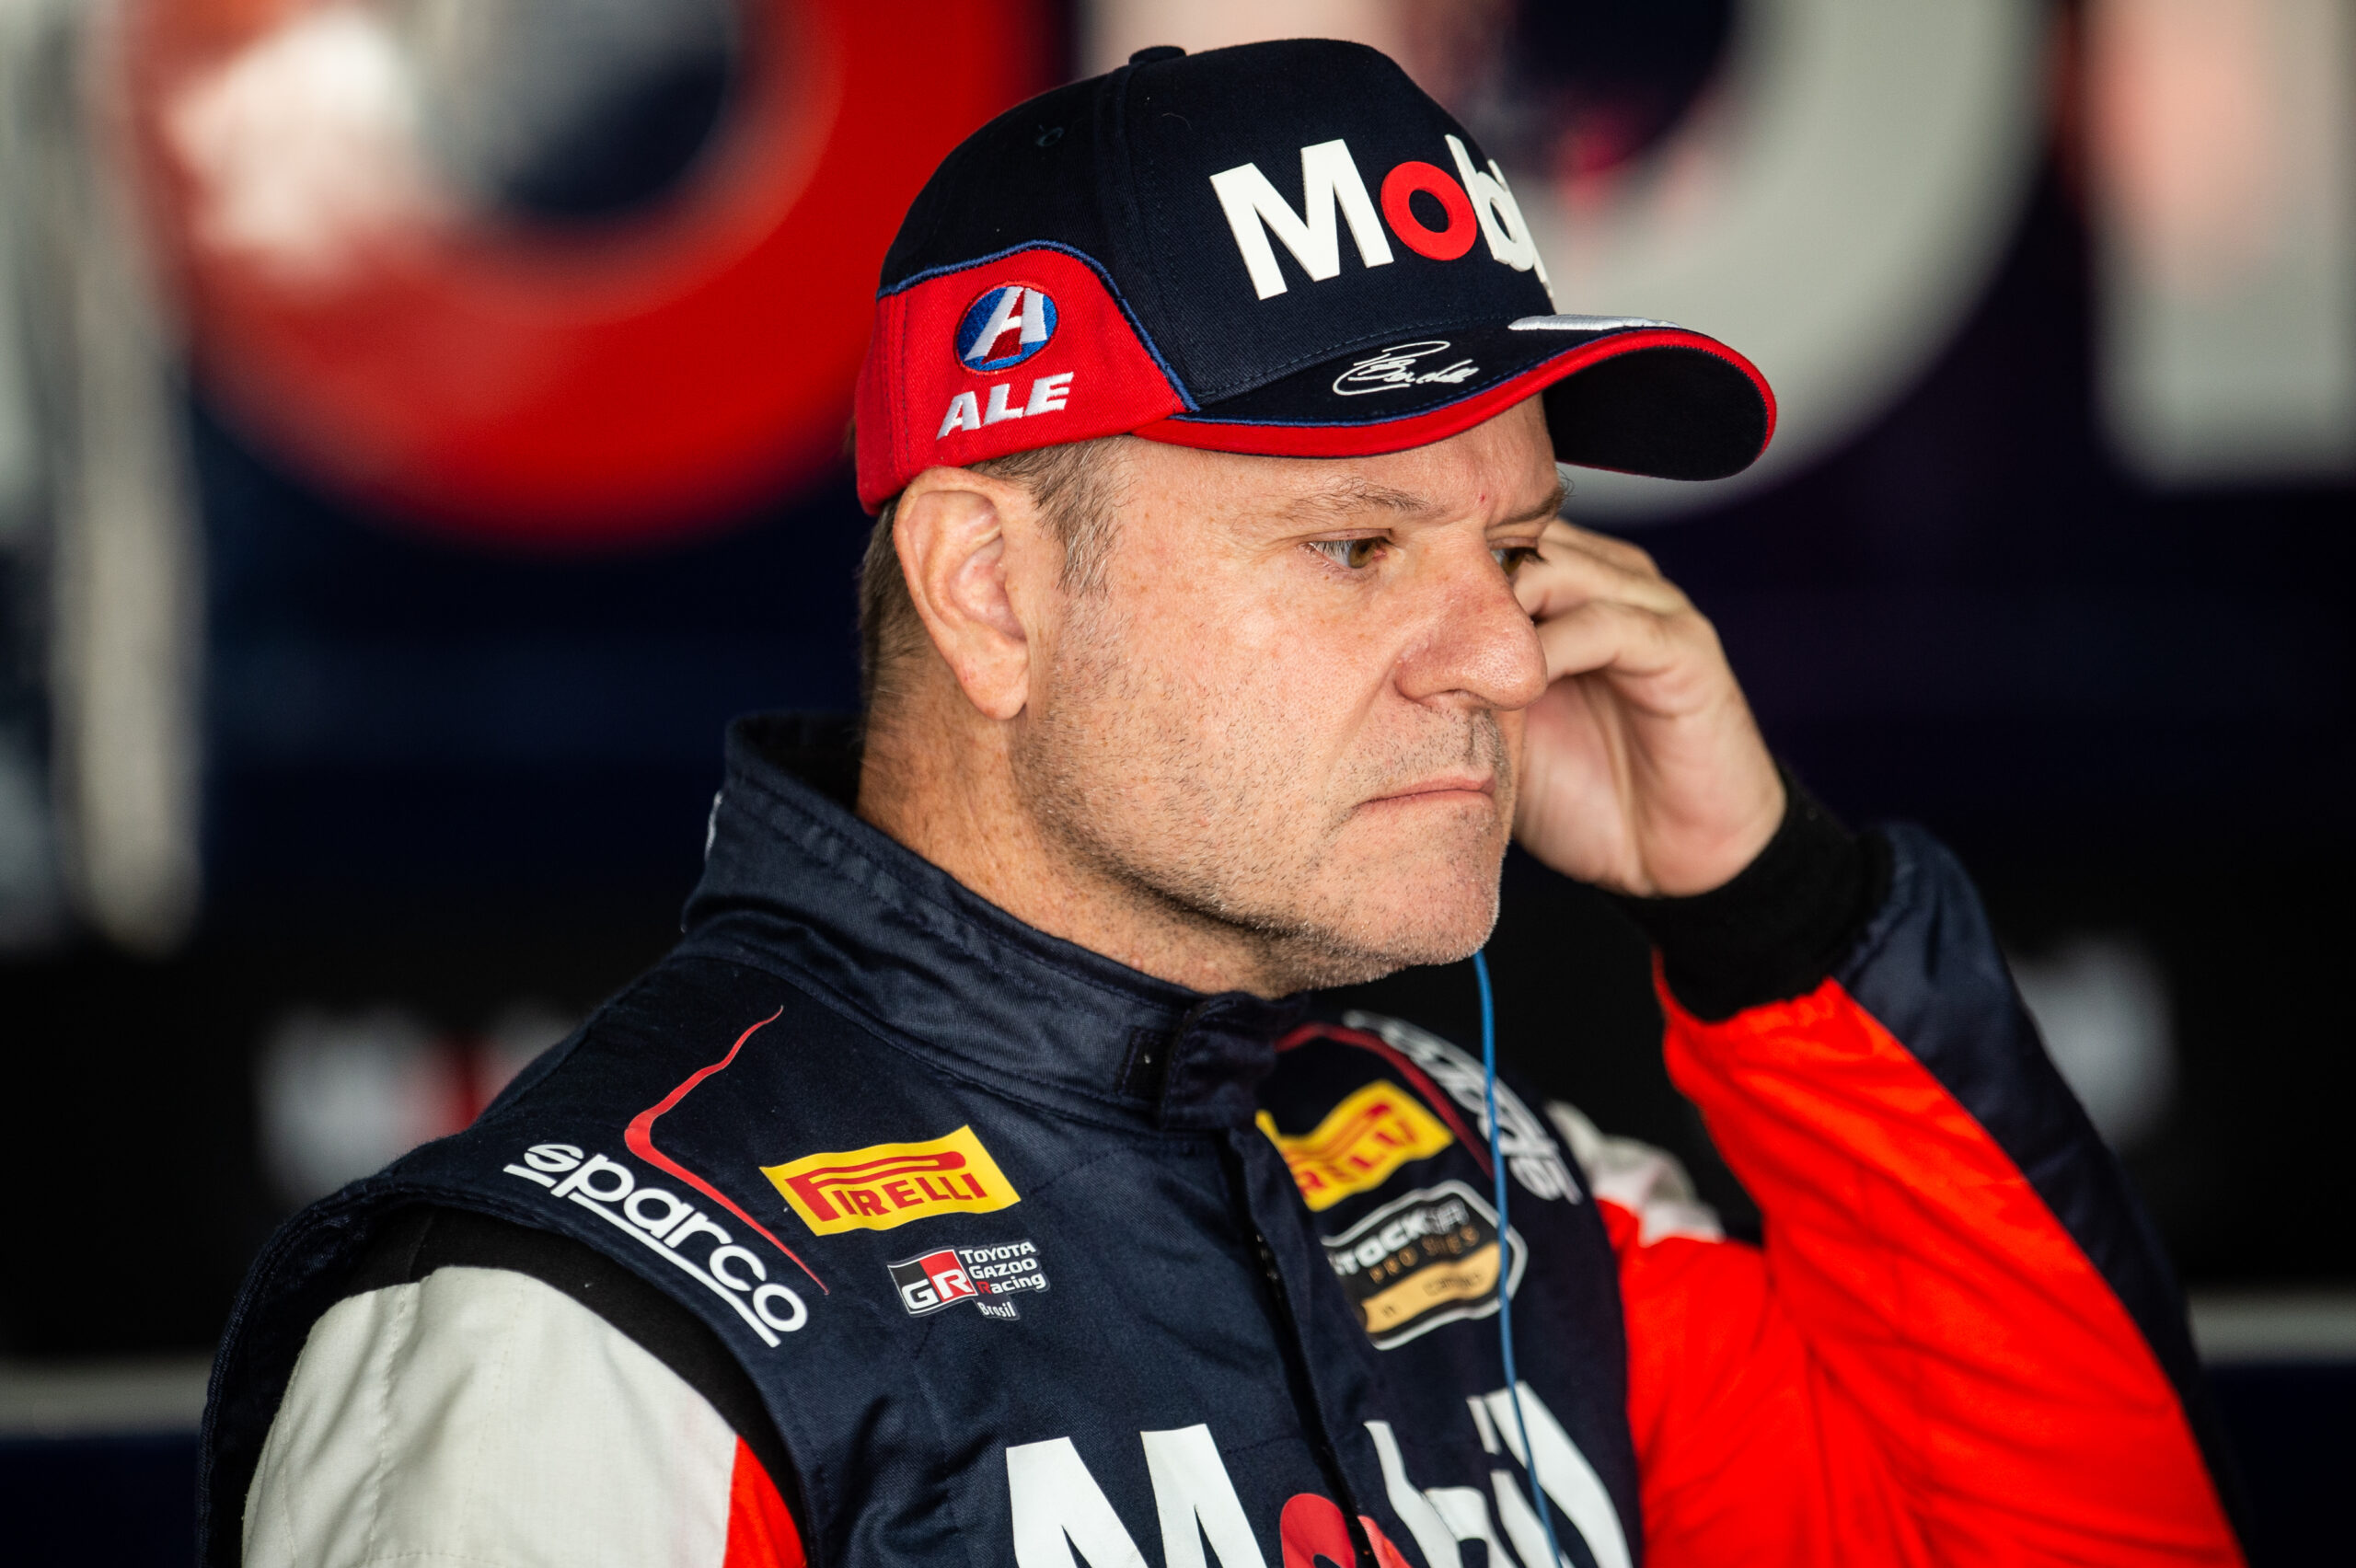 Rubens Barrichello chega como líder para etapa final e mira título em Interlagos Duda Bairros